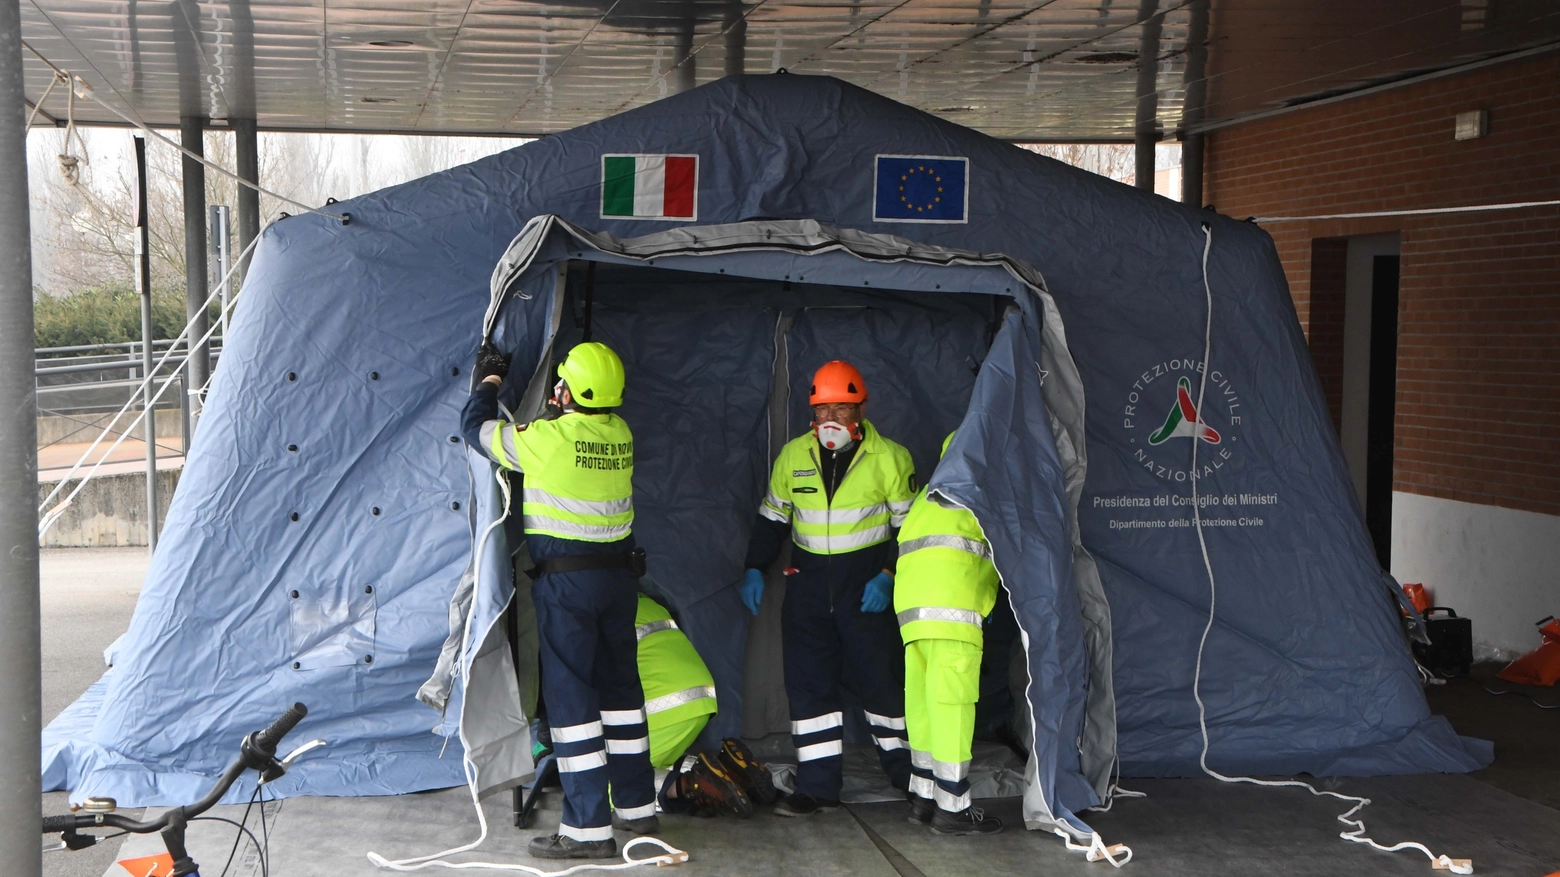 Le tende installate davanti all'ospedale di Rovigo dalla Protezione Civile (foto Donzelli)